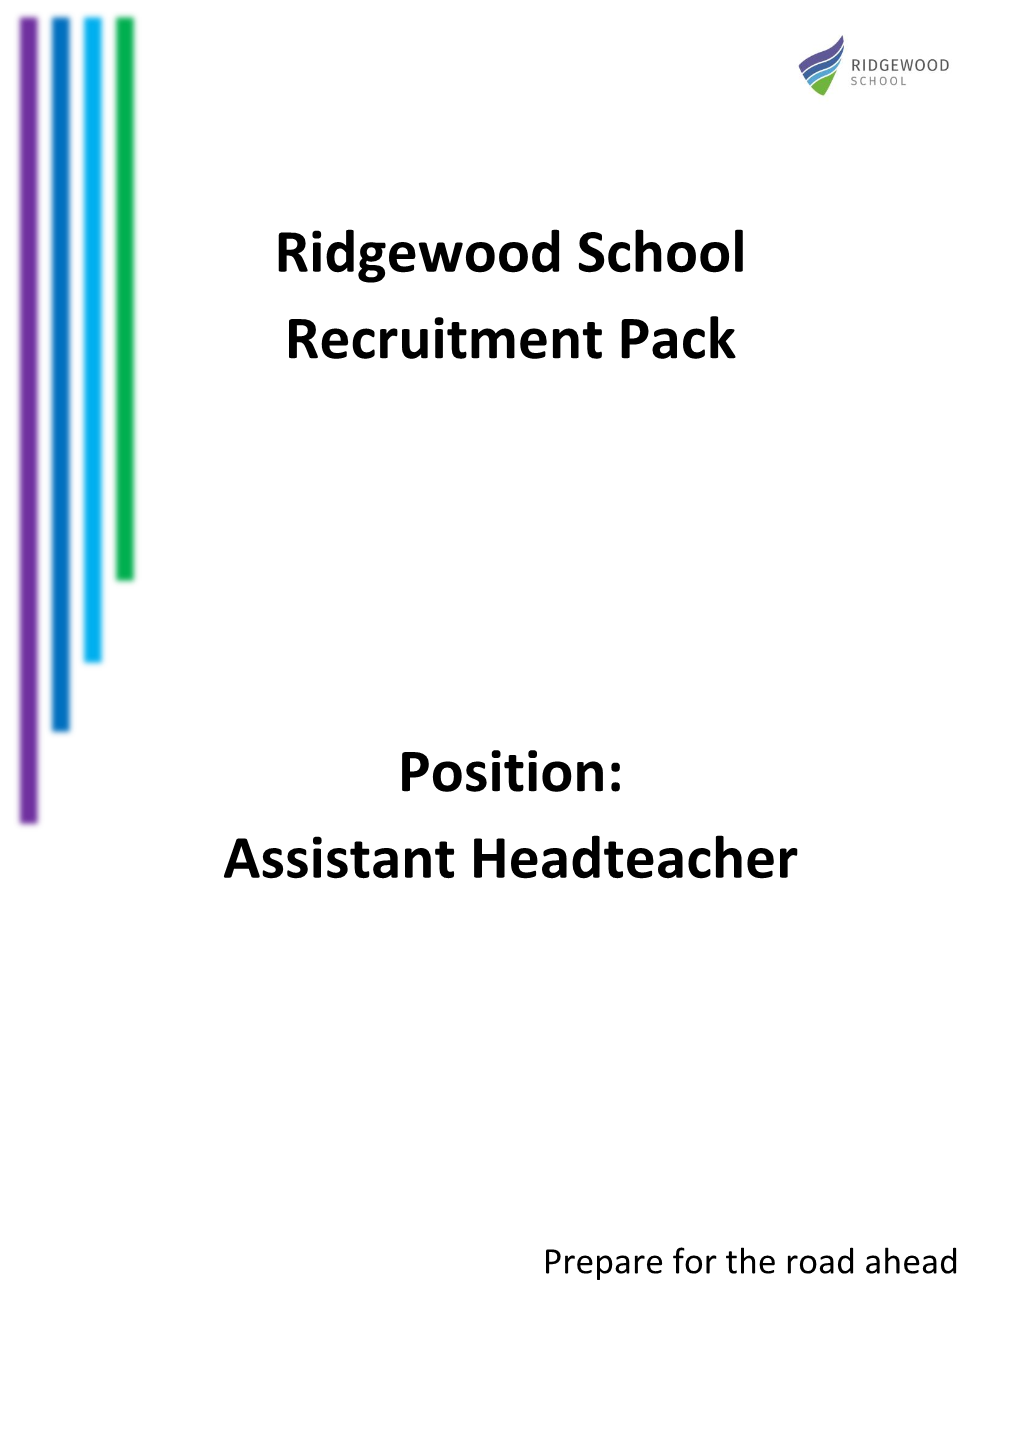 Ridgewood School Recruitment Pack Position: Assistant Headteacher